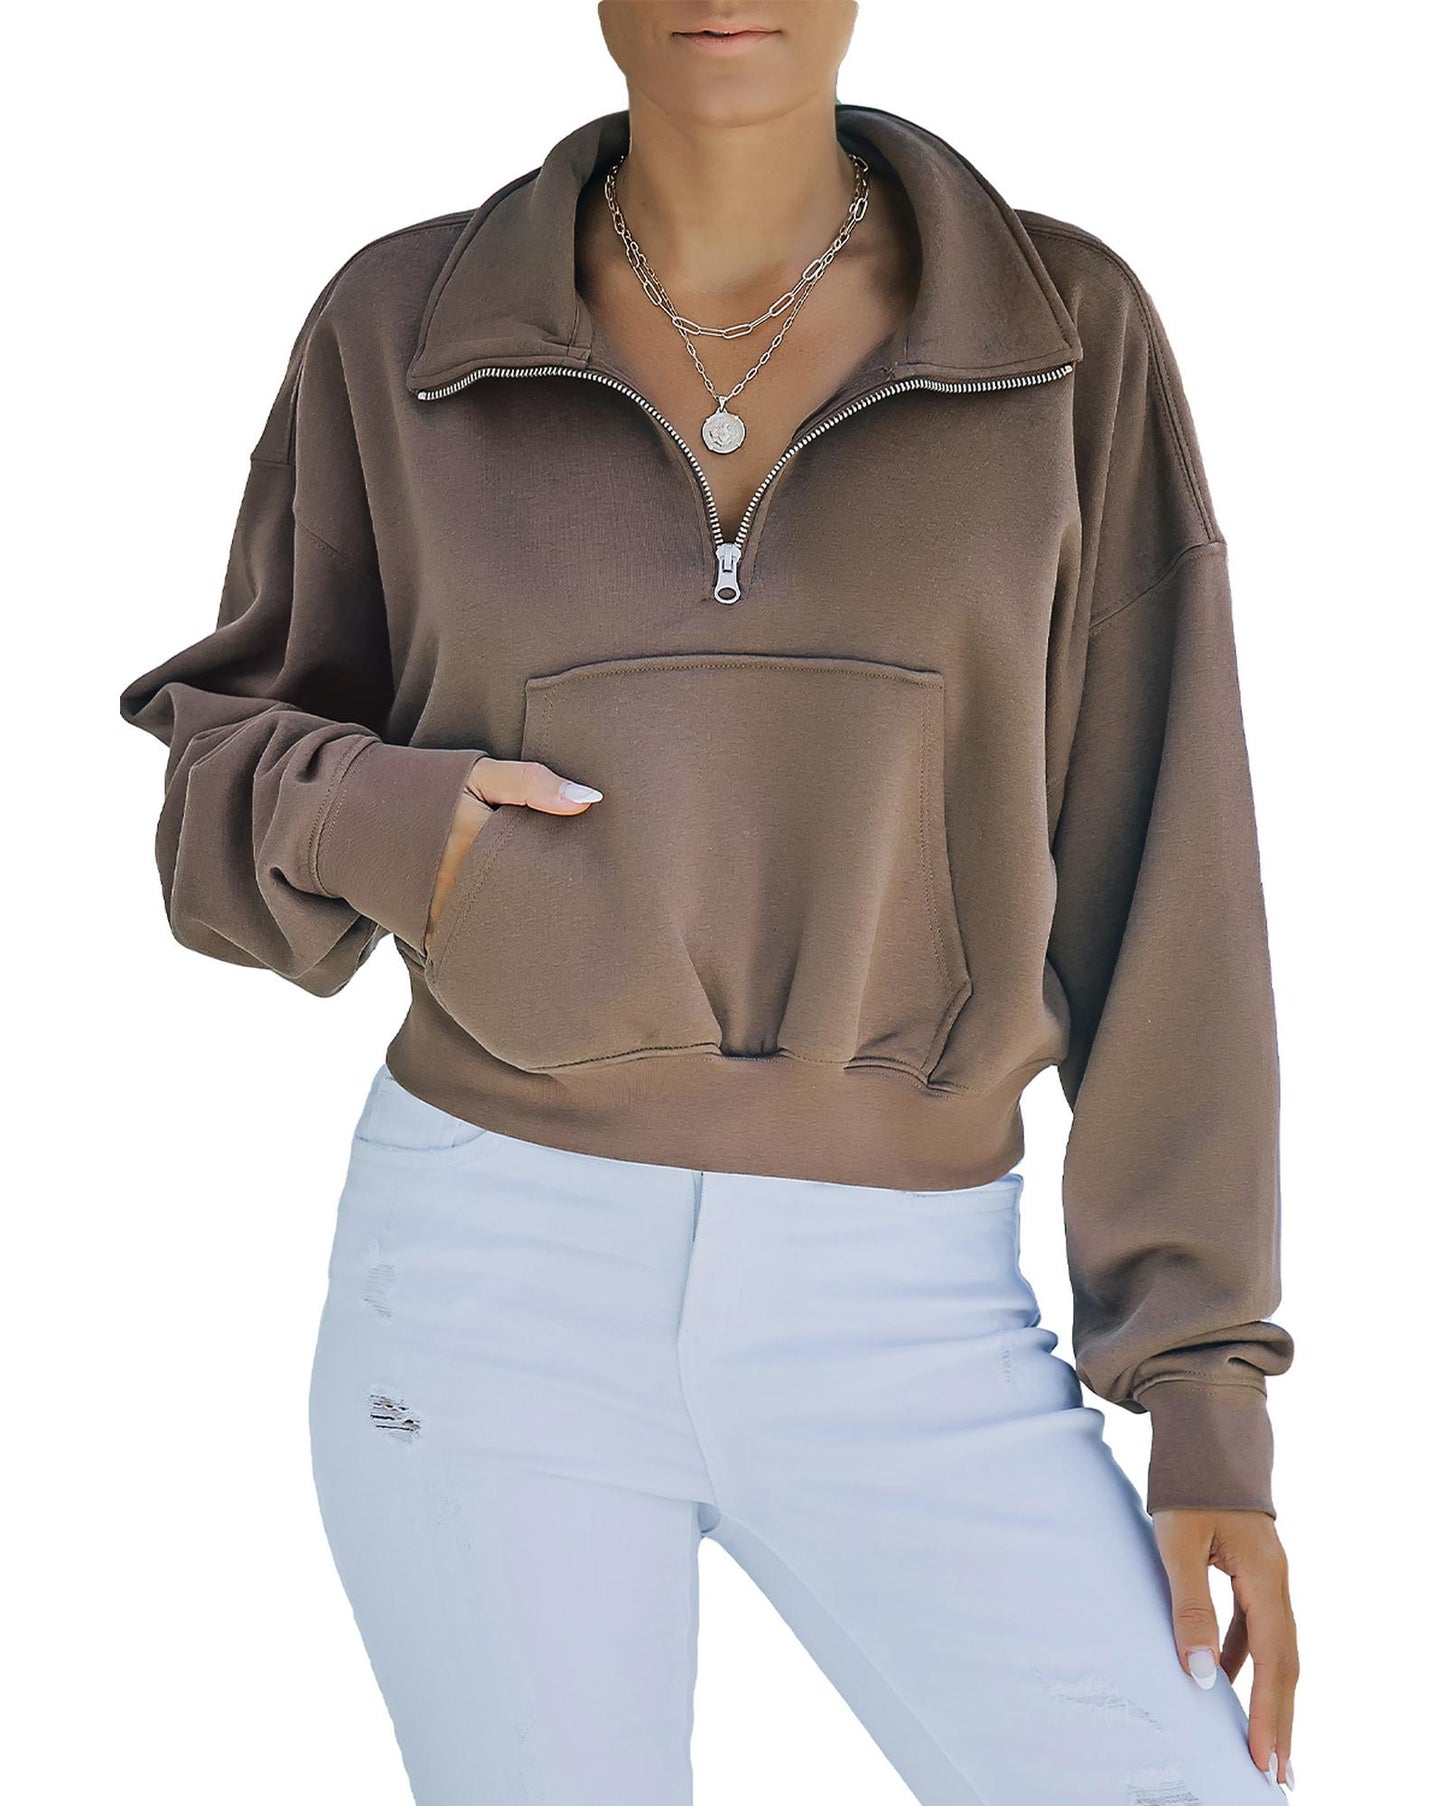 Azura Exchange Zipped Cropped Sweatshirt with Pocket - 2XL